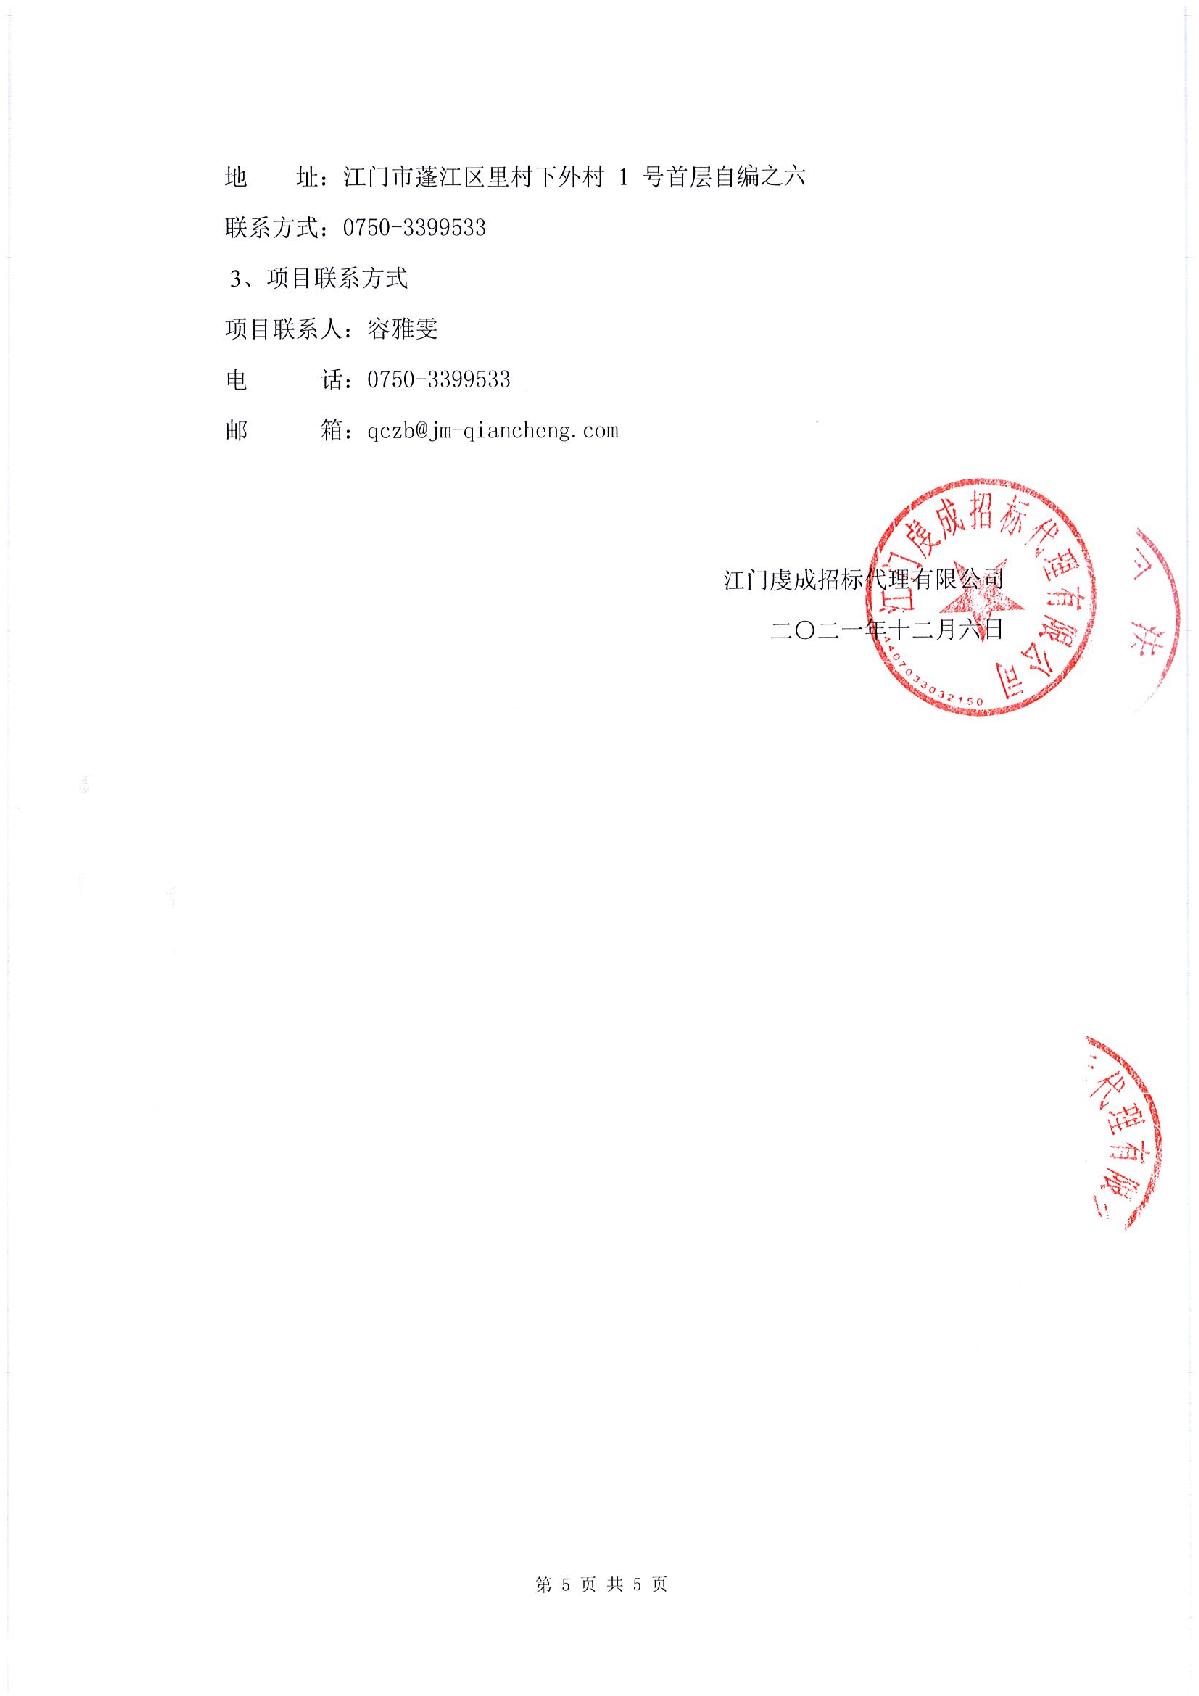 采购邀请函-江门市司法局食堂食材配送采购项目_5.JPG